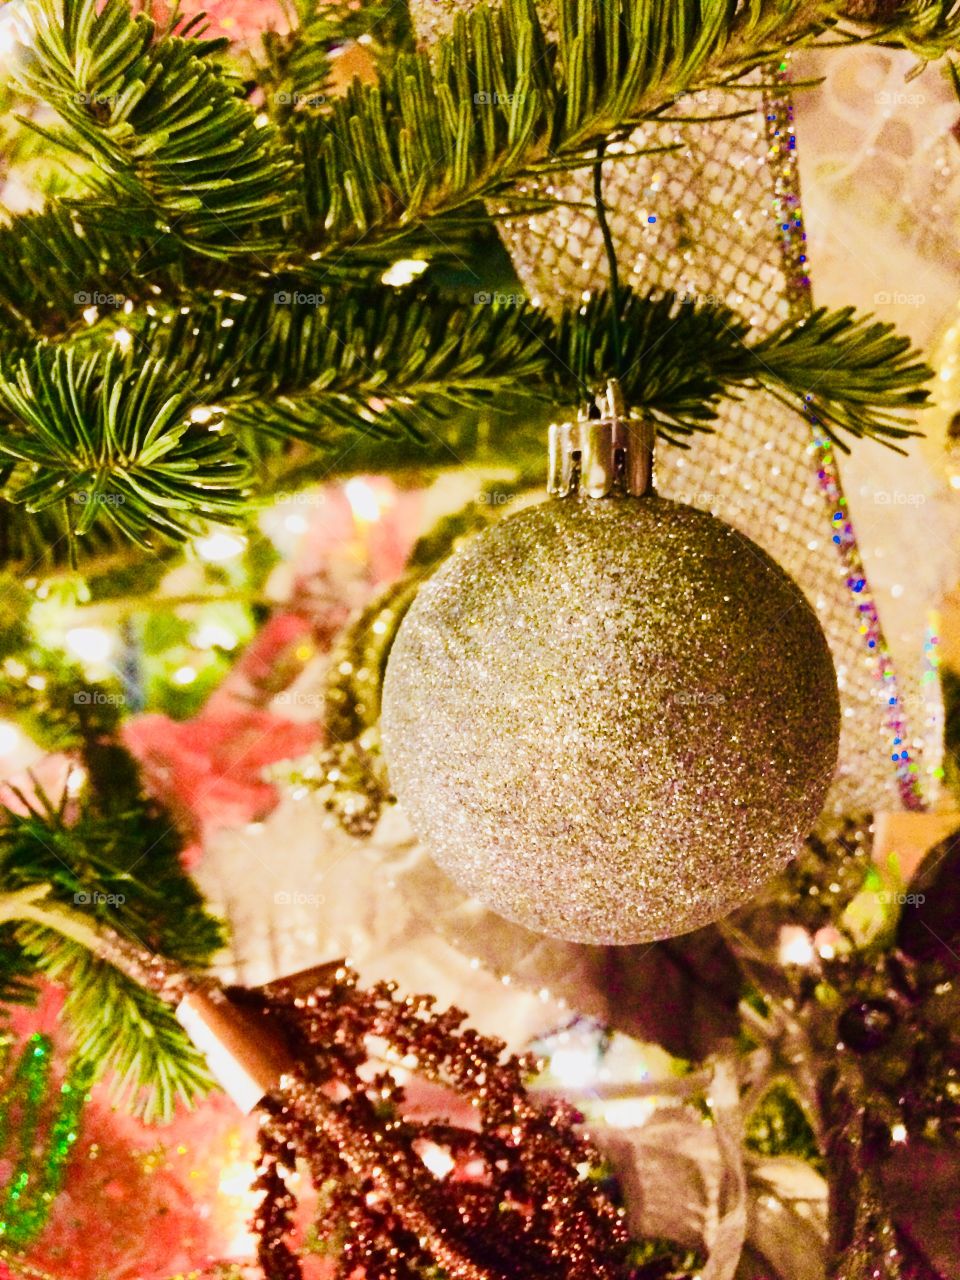 Christmas decoration photos, tree closeup, family, Christmas time, winter season 